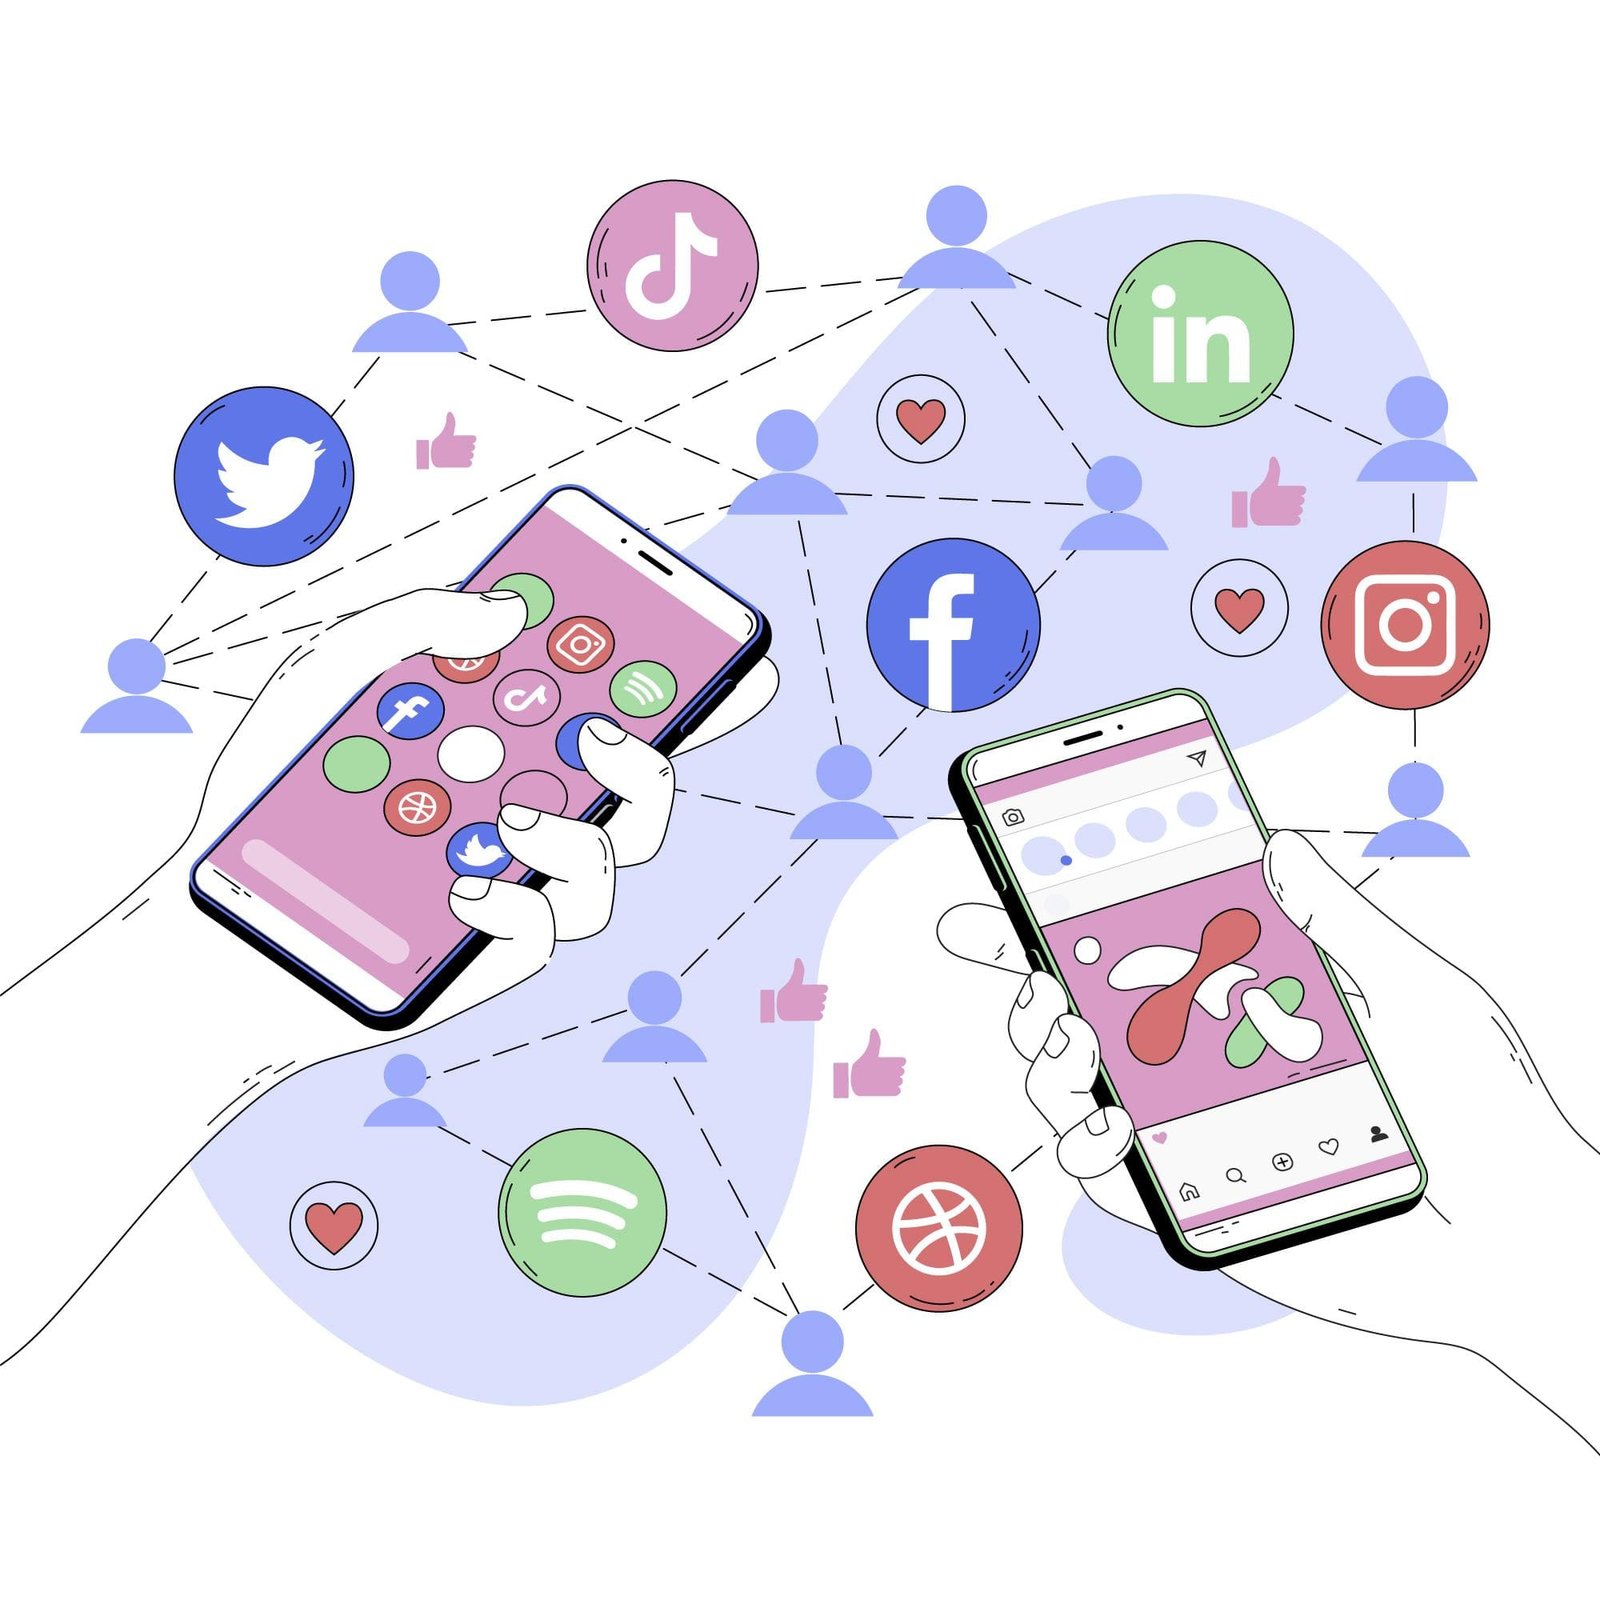 استراتيجيات التسويق الفعّالة على منصات التواصل الاجتماعي: أفضل النصائح والأساليب